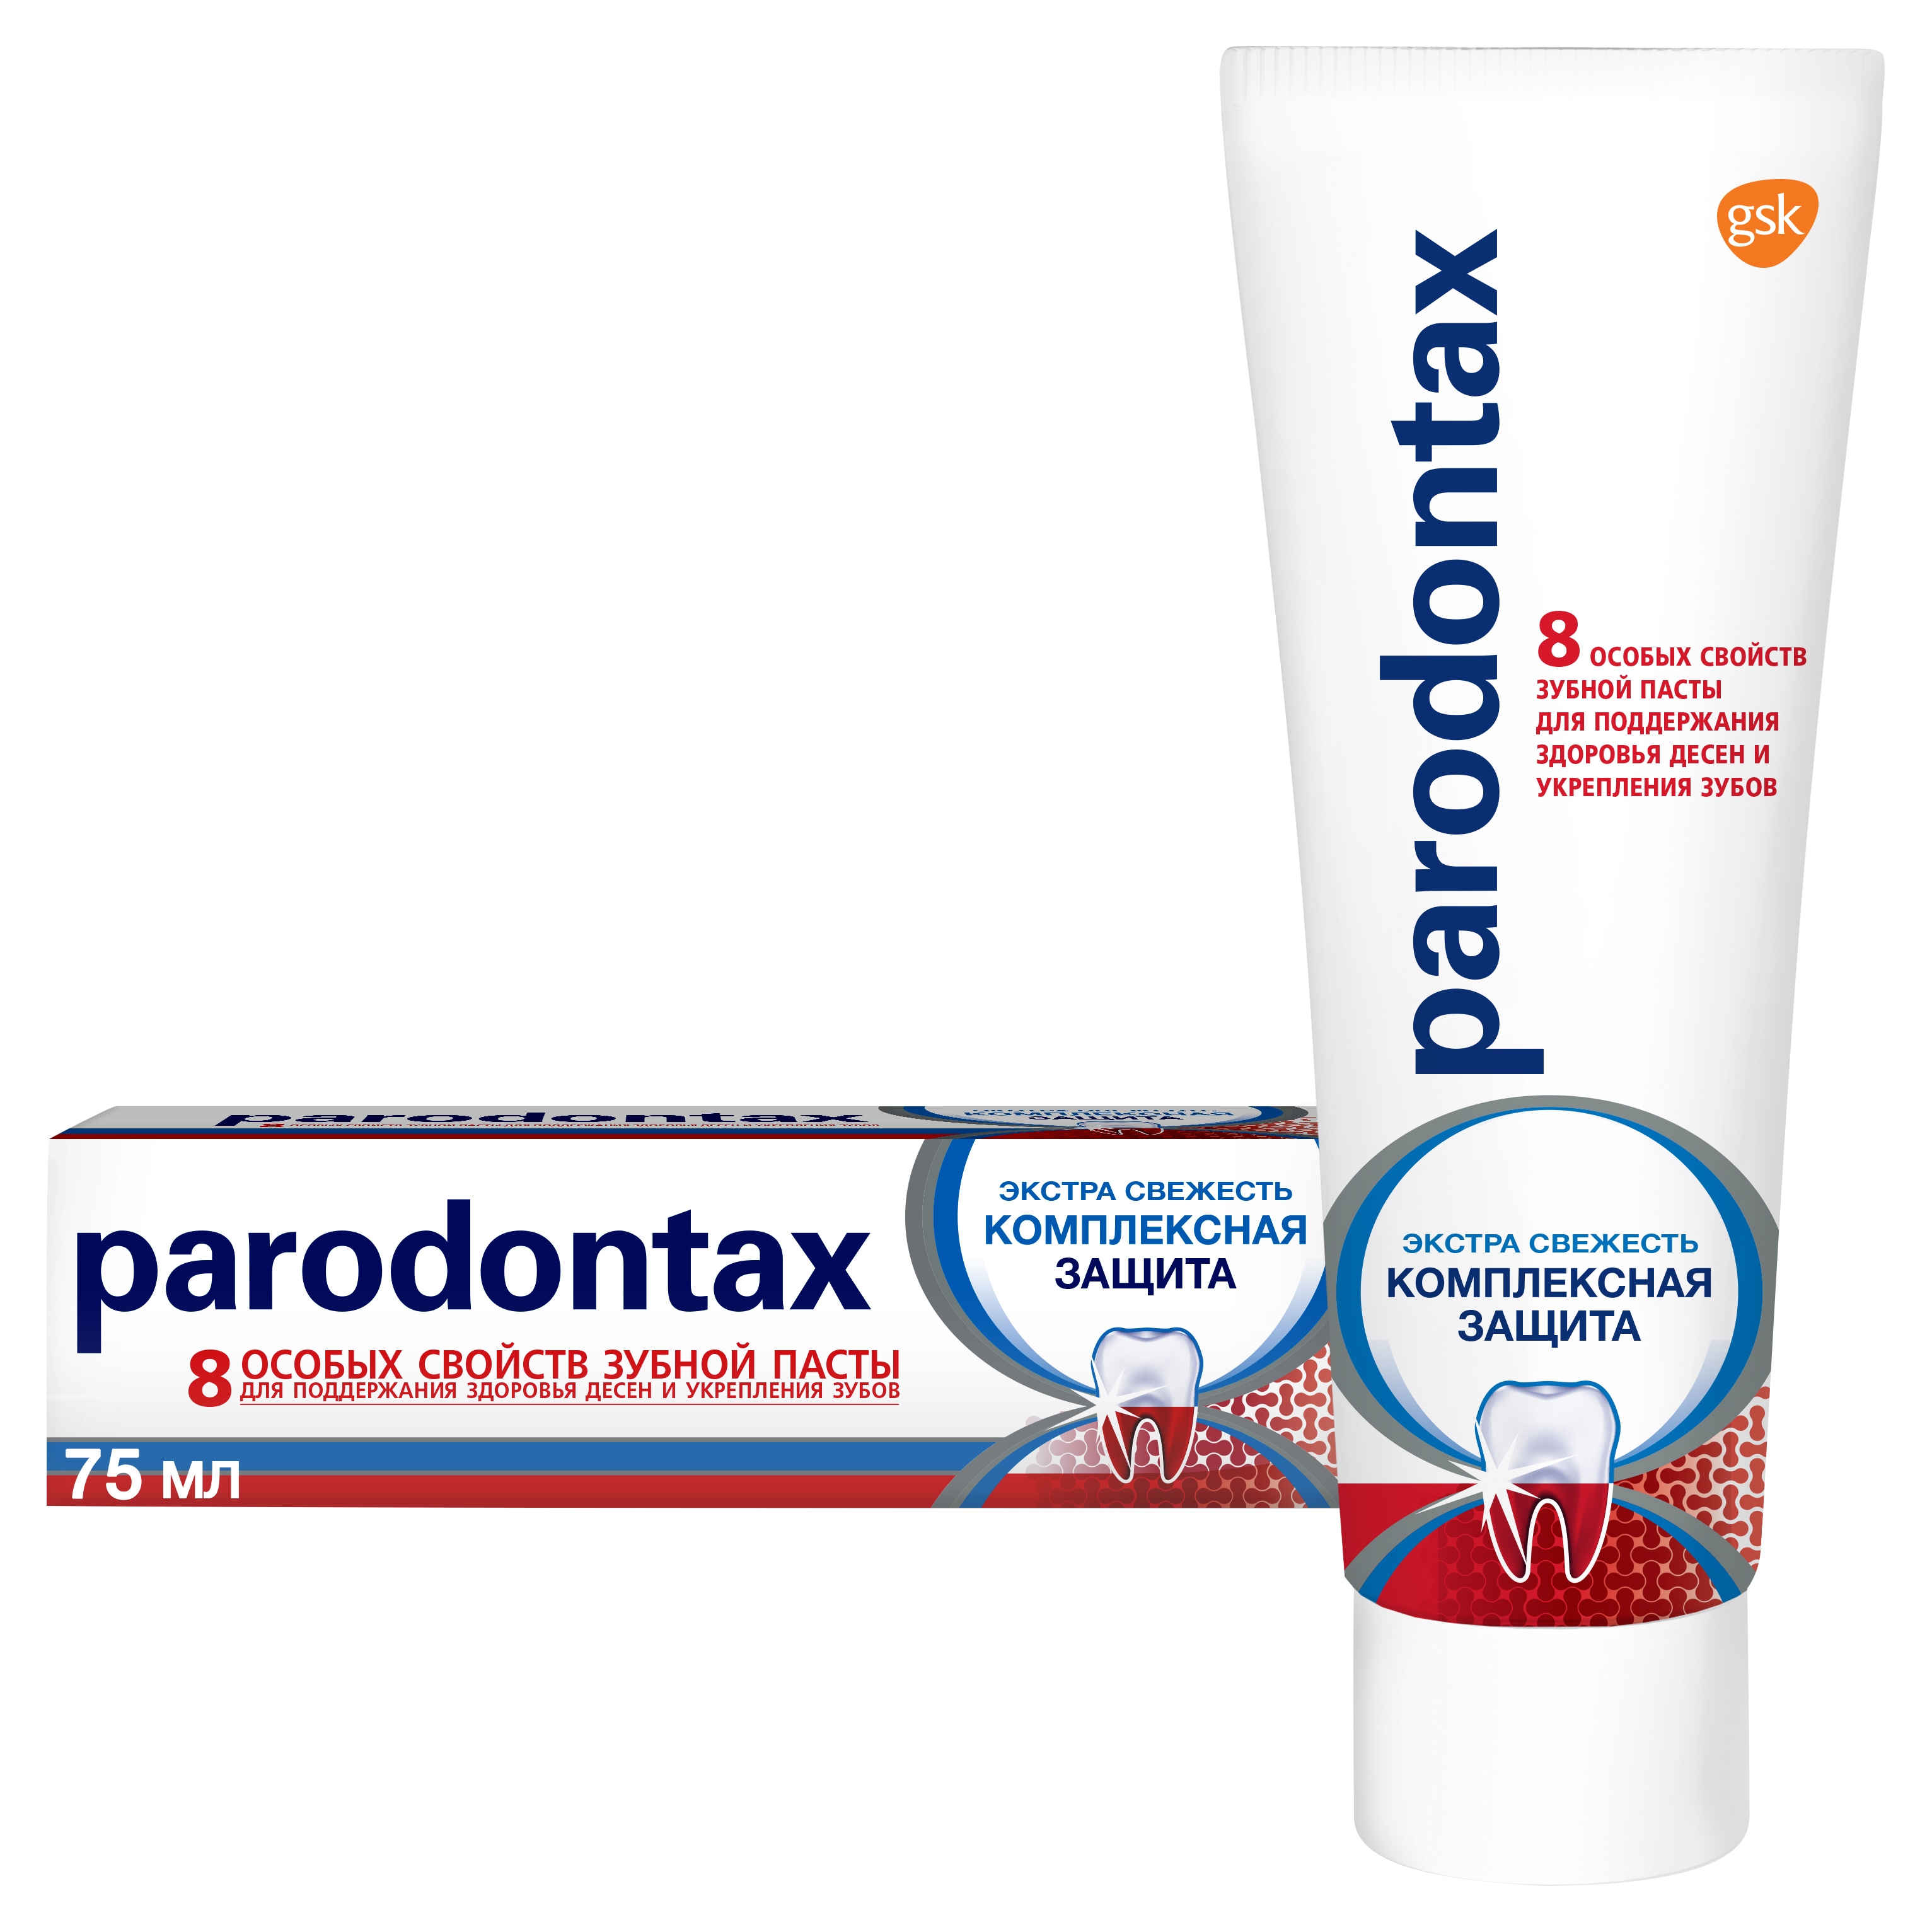 Зубная паста Parodontax Комплексная Защита, 75 мл r o c s biocomplex зубная паста активная защита 94 г